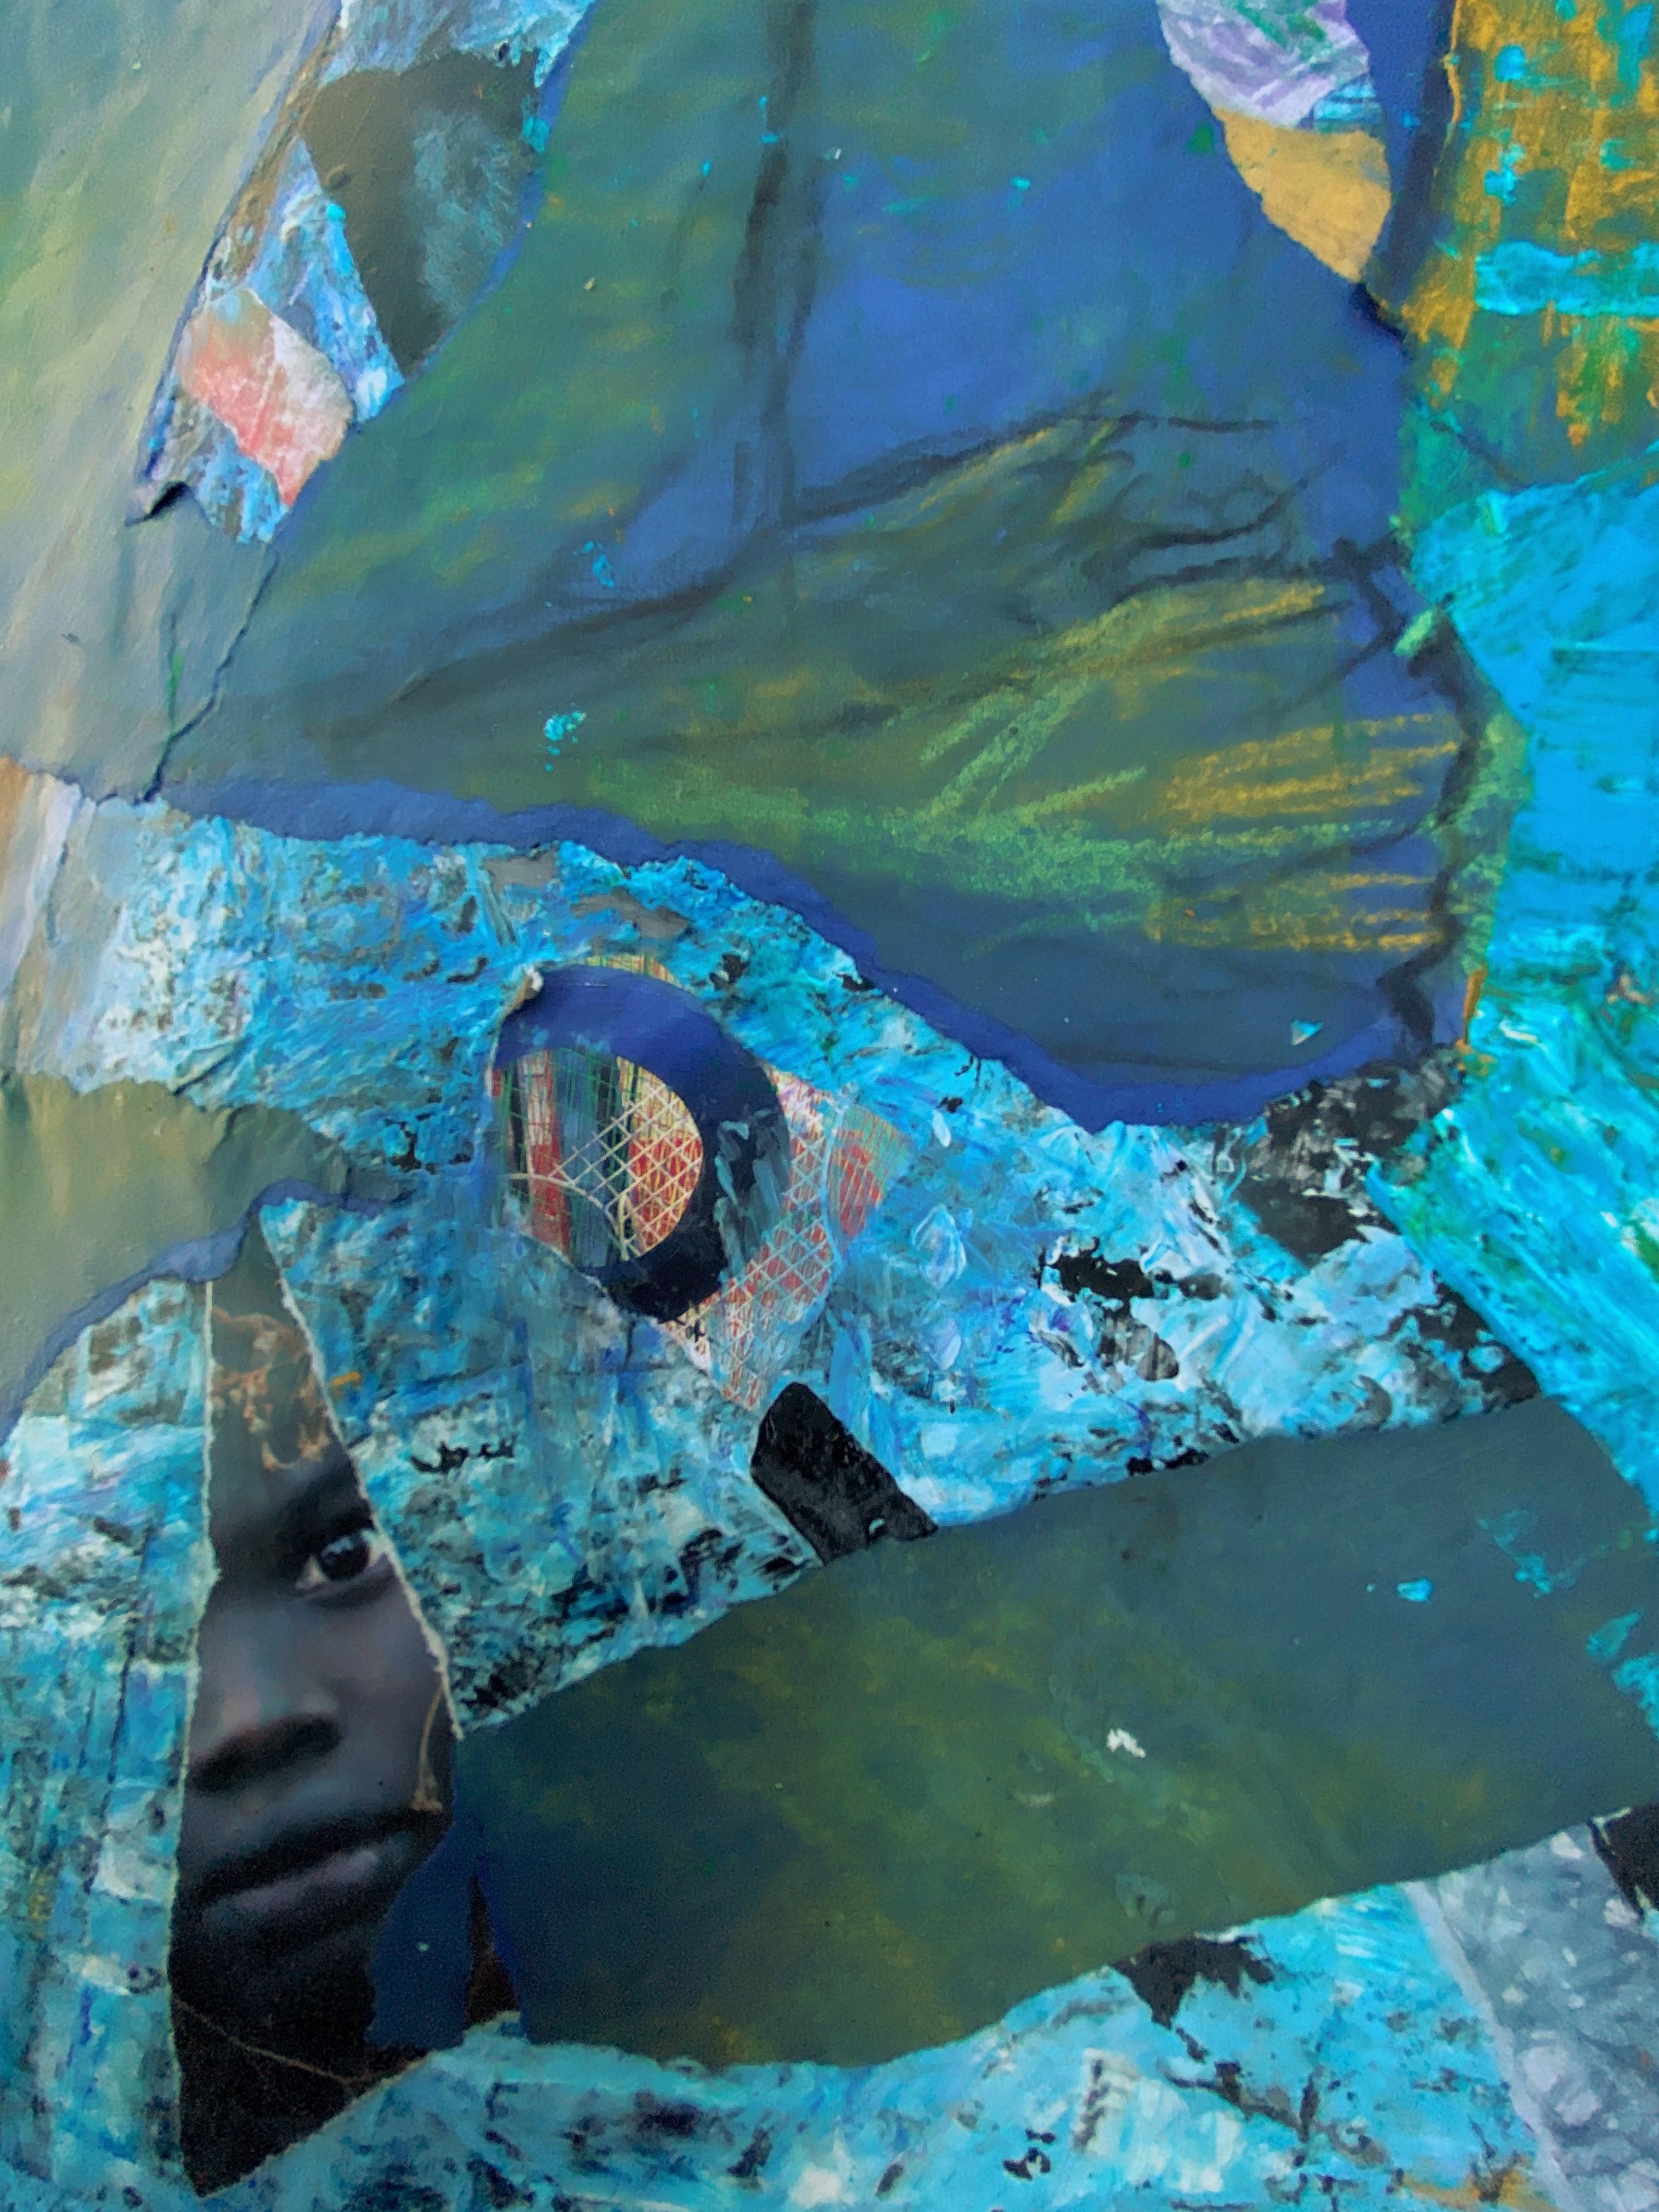 Blaues Indigo, Zeichnungscollage, weibliche Figur mit abstrakten Mustern, leuchtende Blautöne (Amerikanische Moderne), Mixed Media Art, von Audrey Anastasi